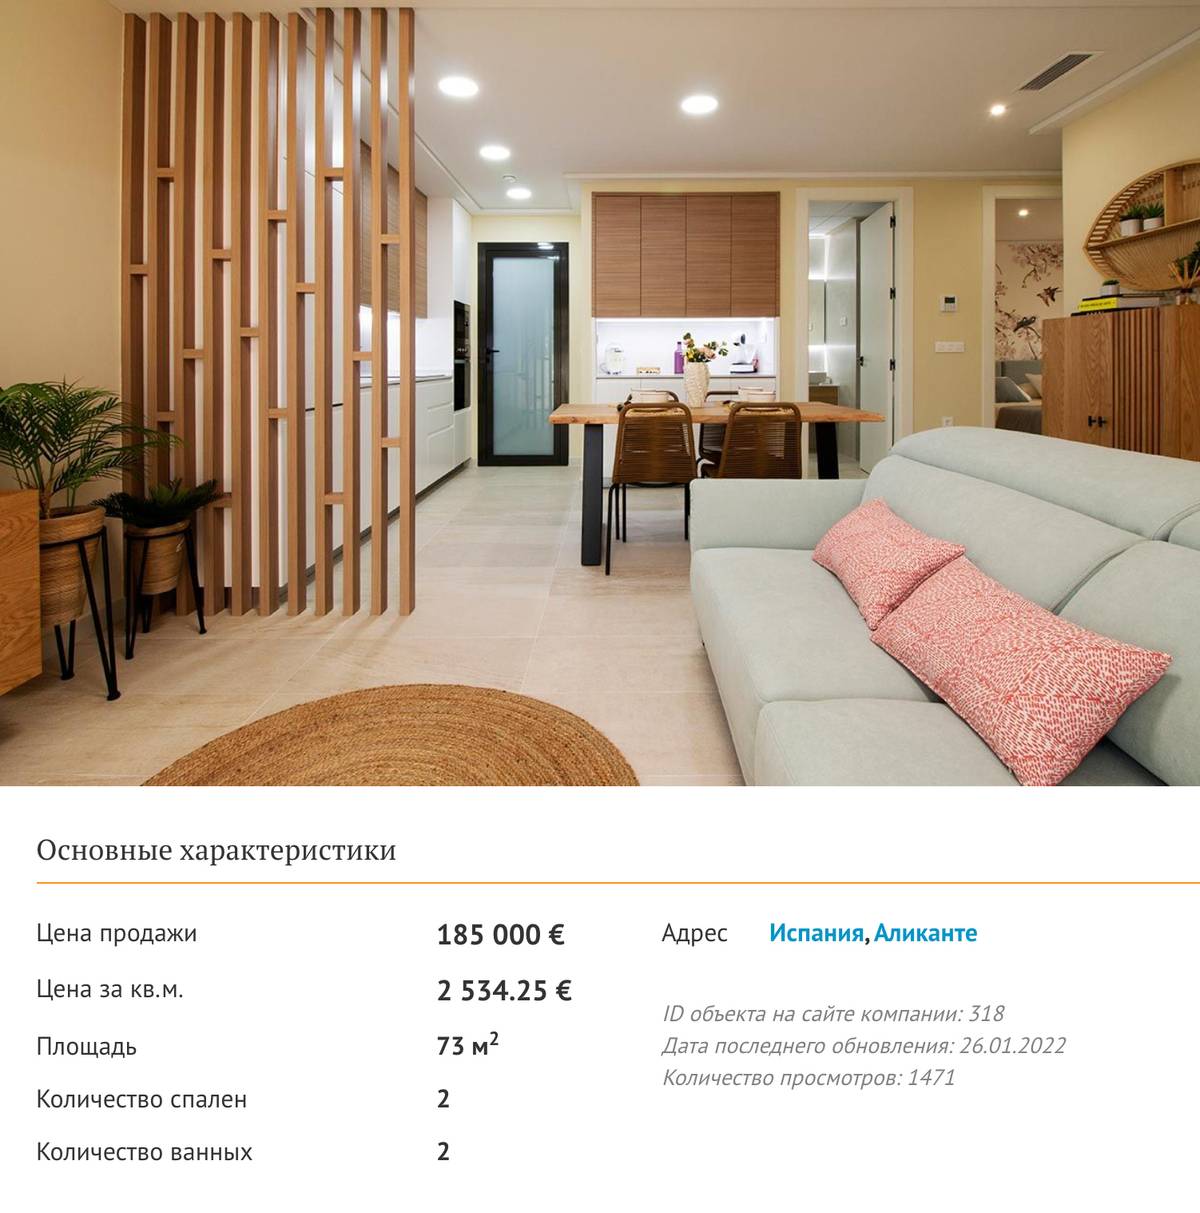 Мы смотрели вот такую квартиру в испанском городе Аликанте. Отпугнула цена и отсутствие вида на море. Источник: prian.ru